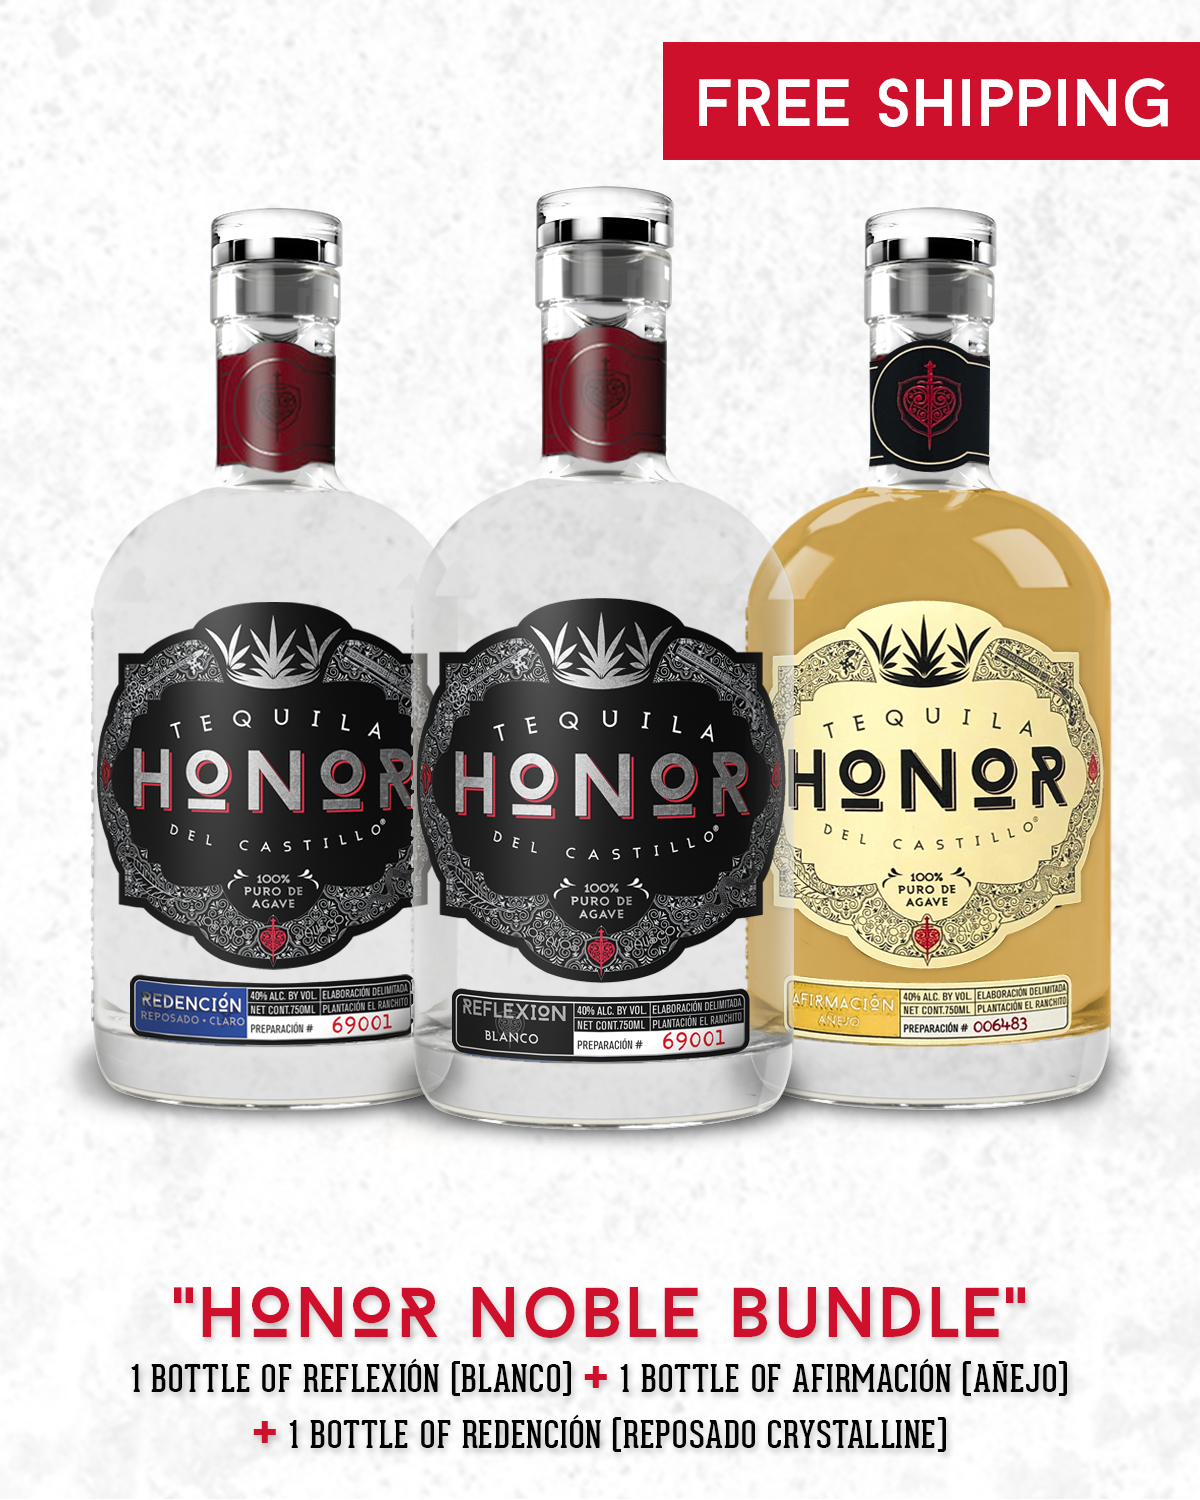 Paquete Honor Noble / Honor Noble Bundle